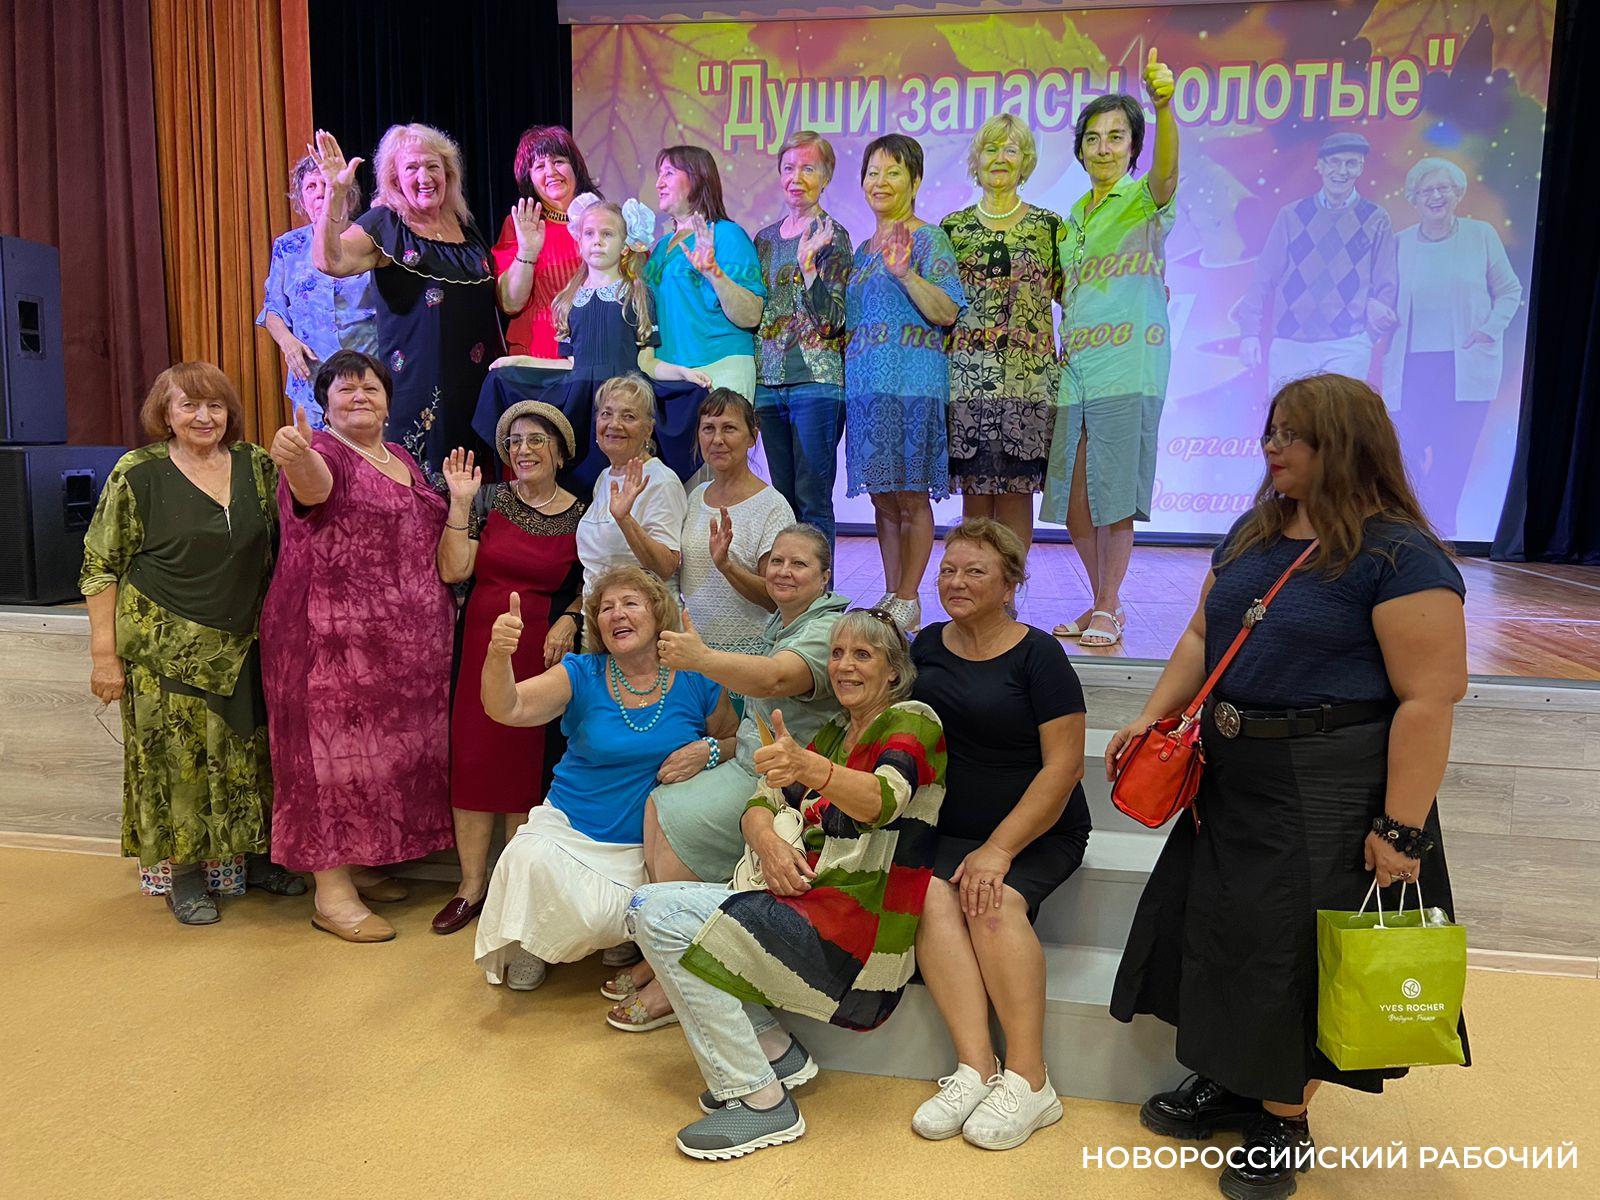 Новороссийцам серебряного возраста показали шикарный концерт. Пенсионеры тоже вышли на сцену